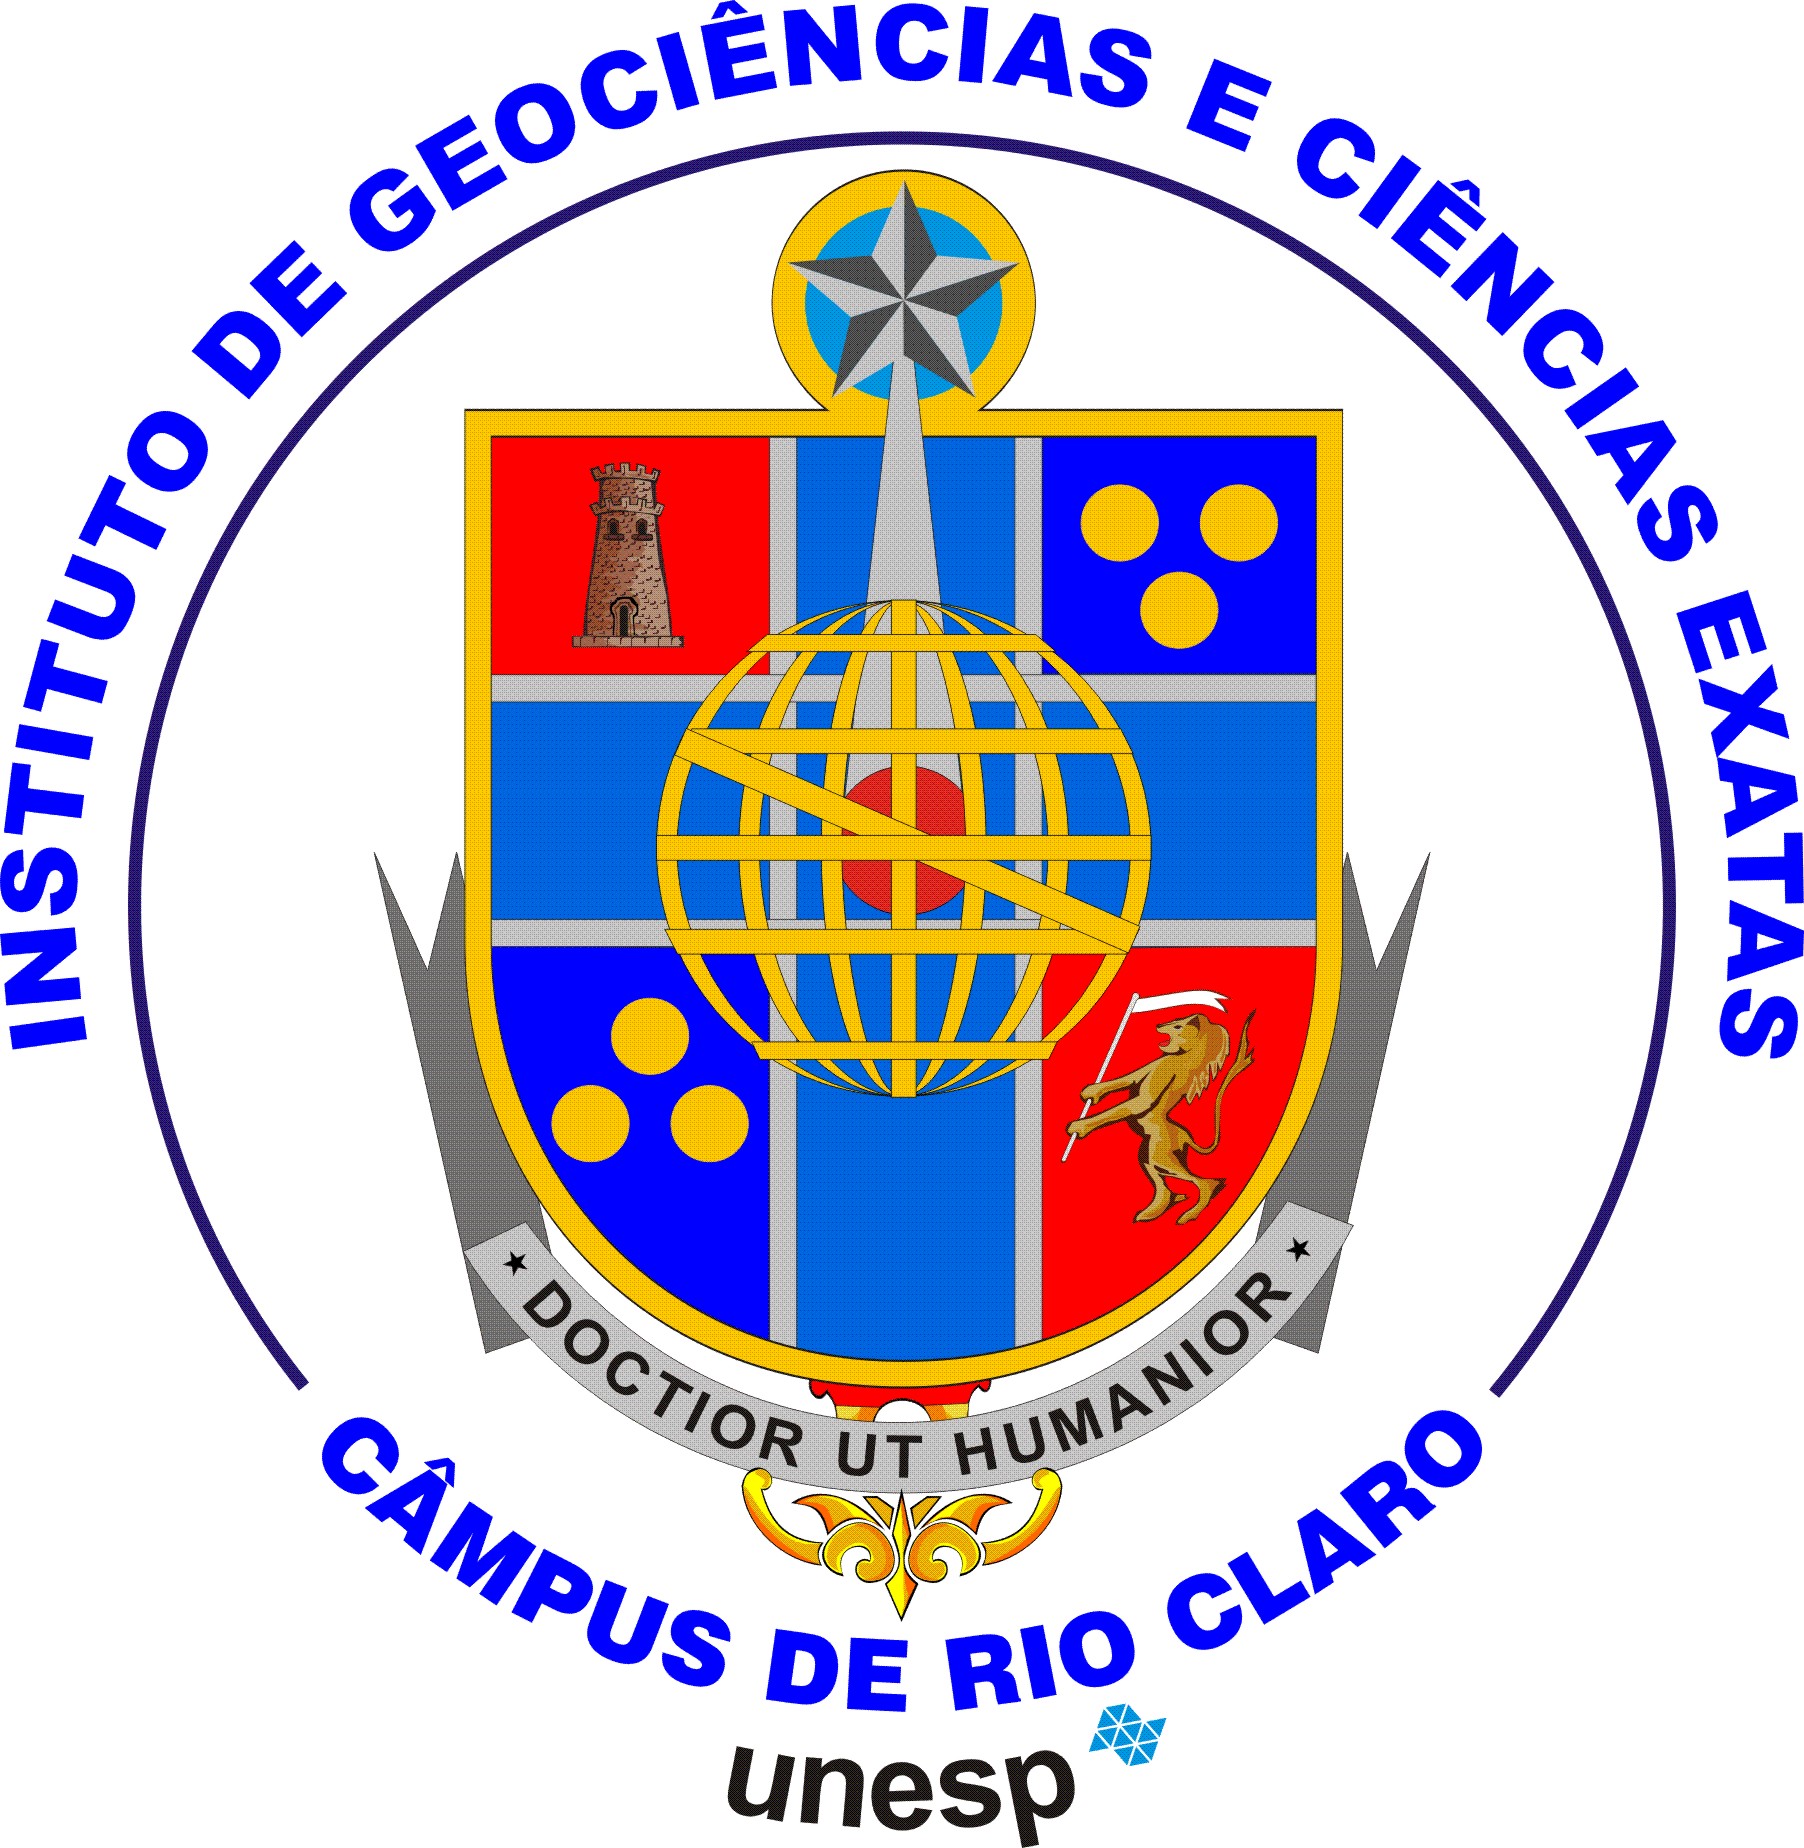 Instituto de Geociências e Ciências Exatas (UNESP, Rio Claro) "